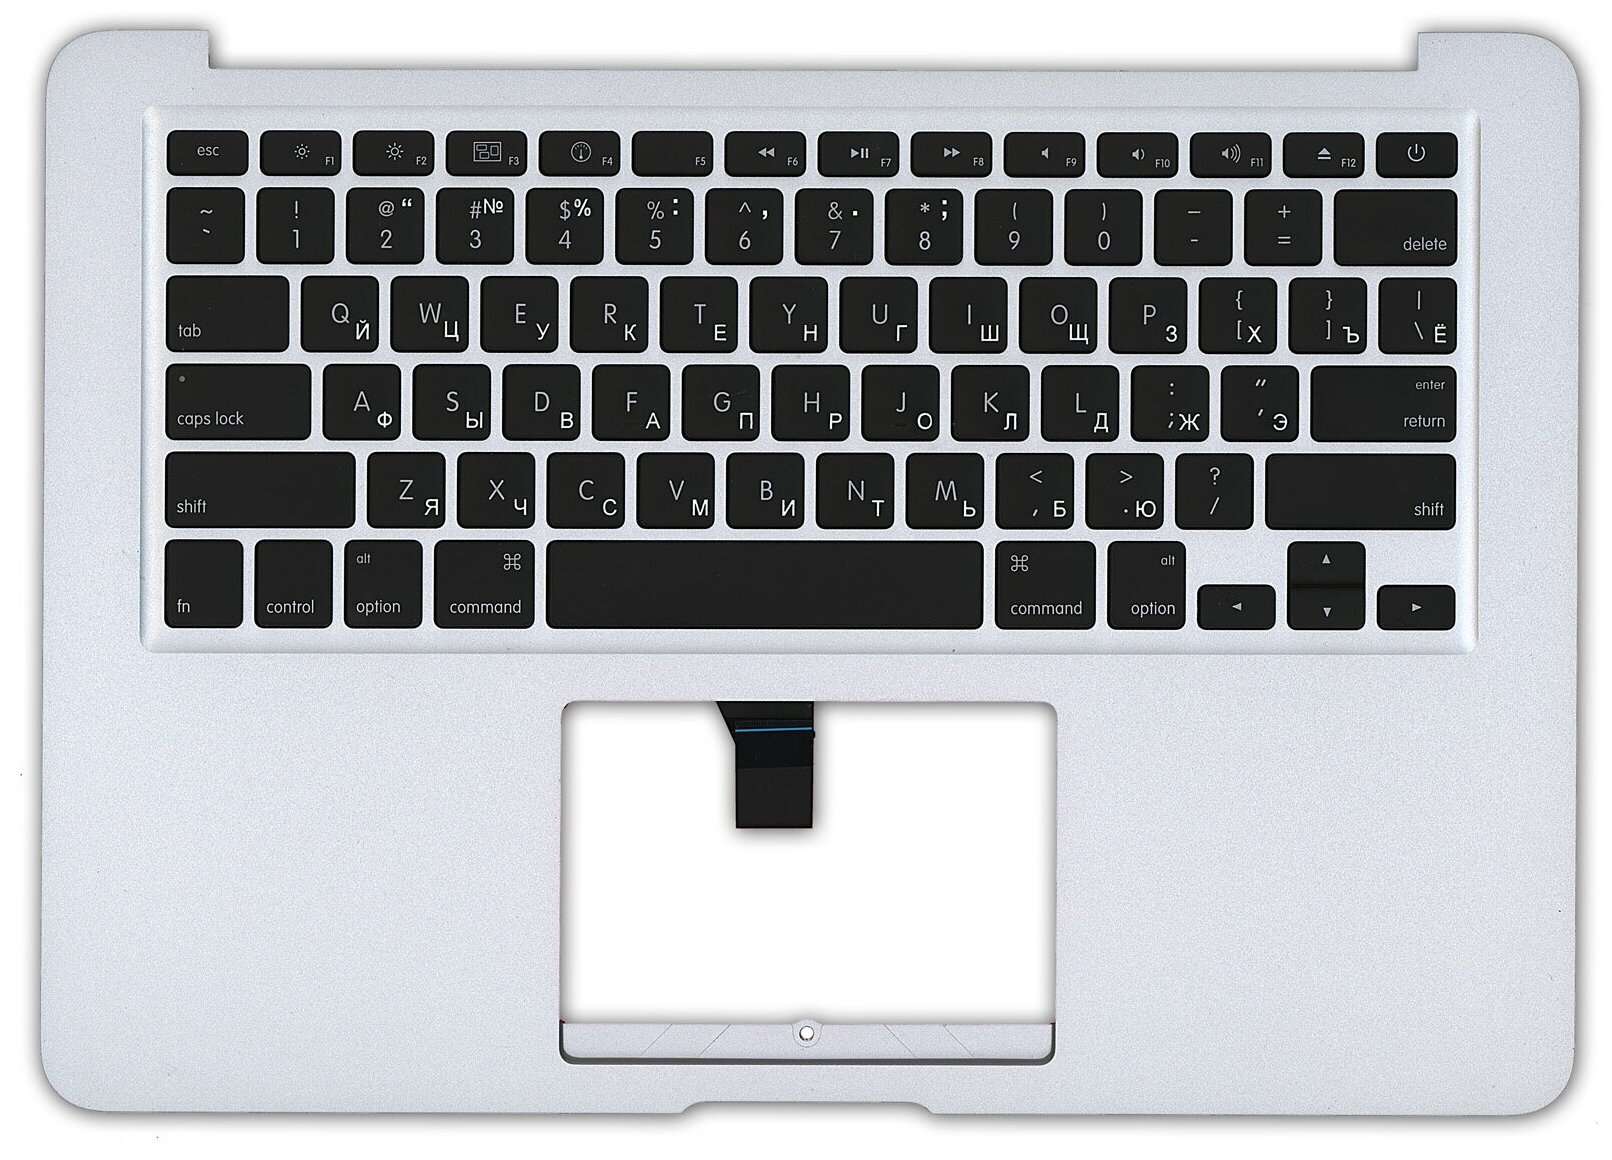 Клавиатура для ноутбука MacBook A1369 2010+ черная без подсветки плоский ENTER топ-панель